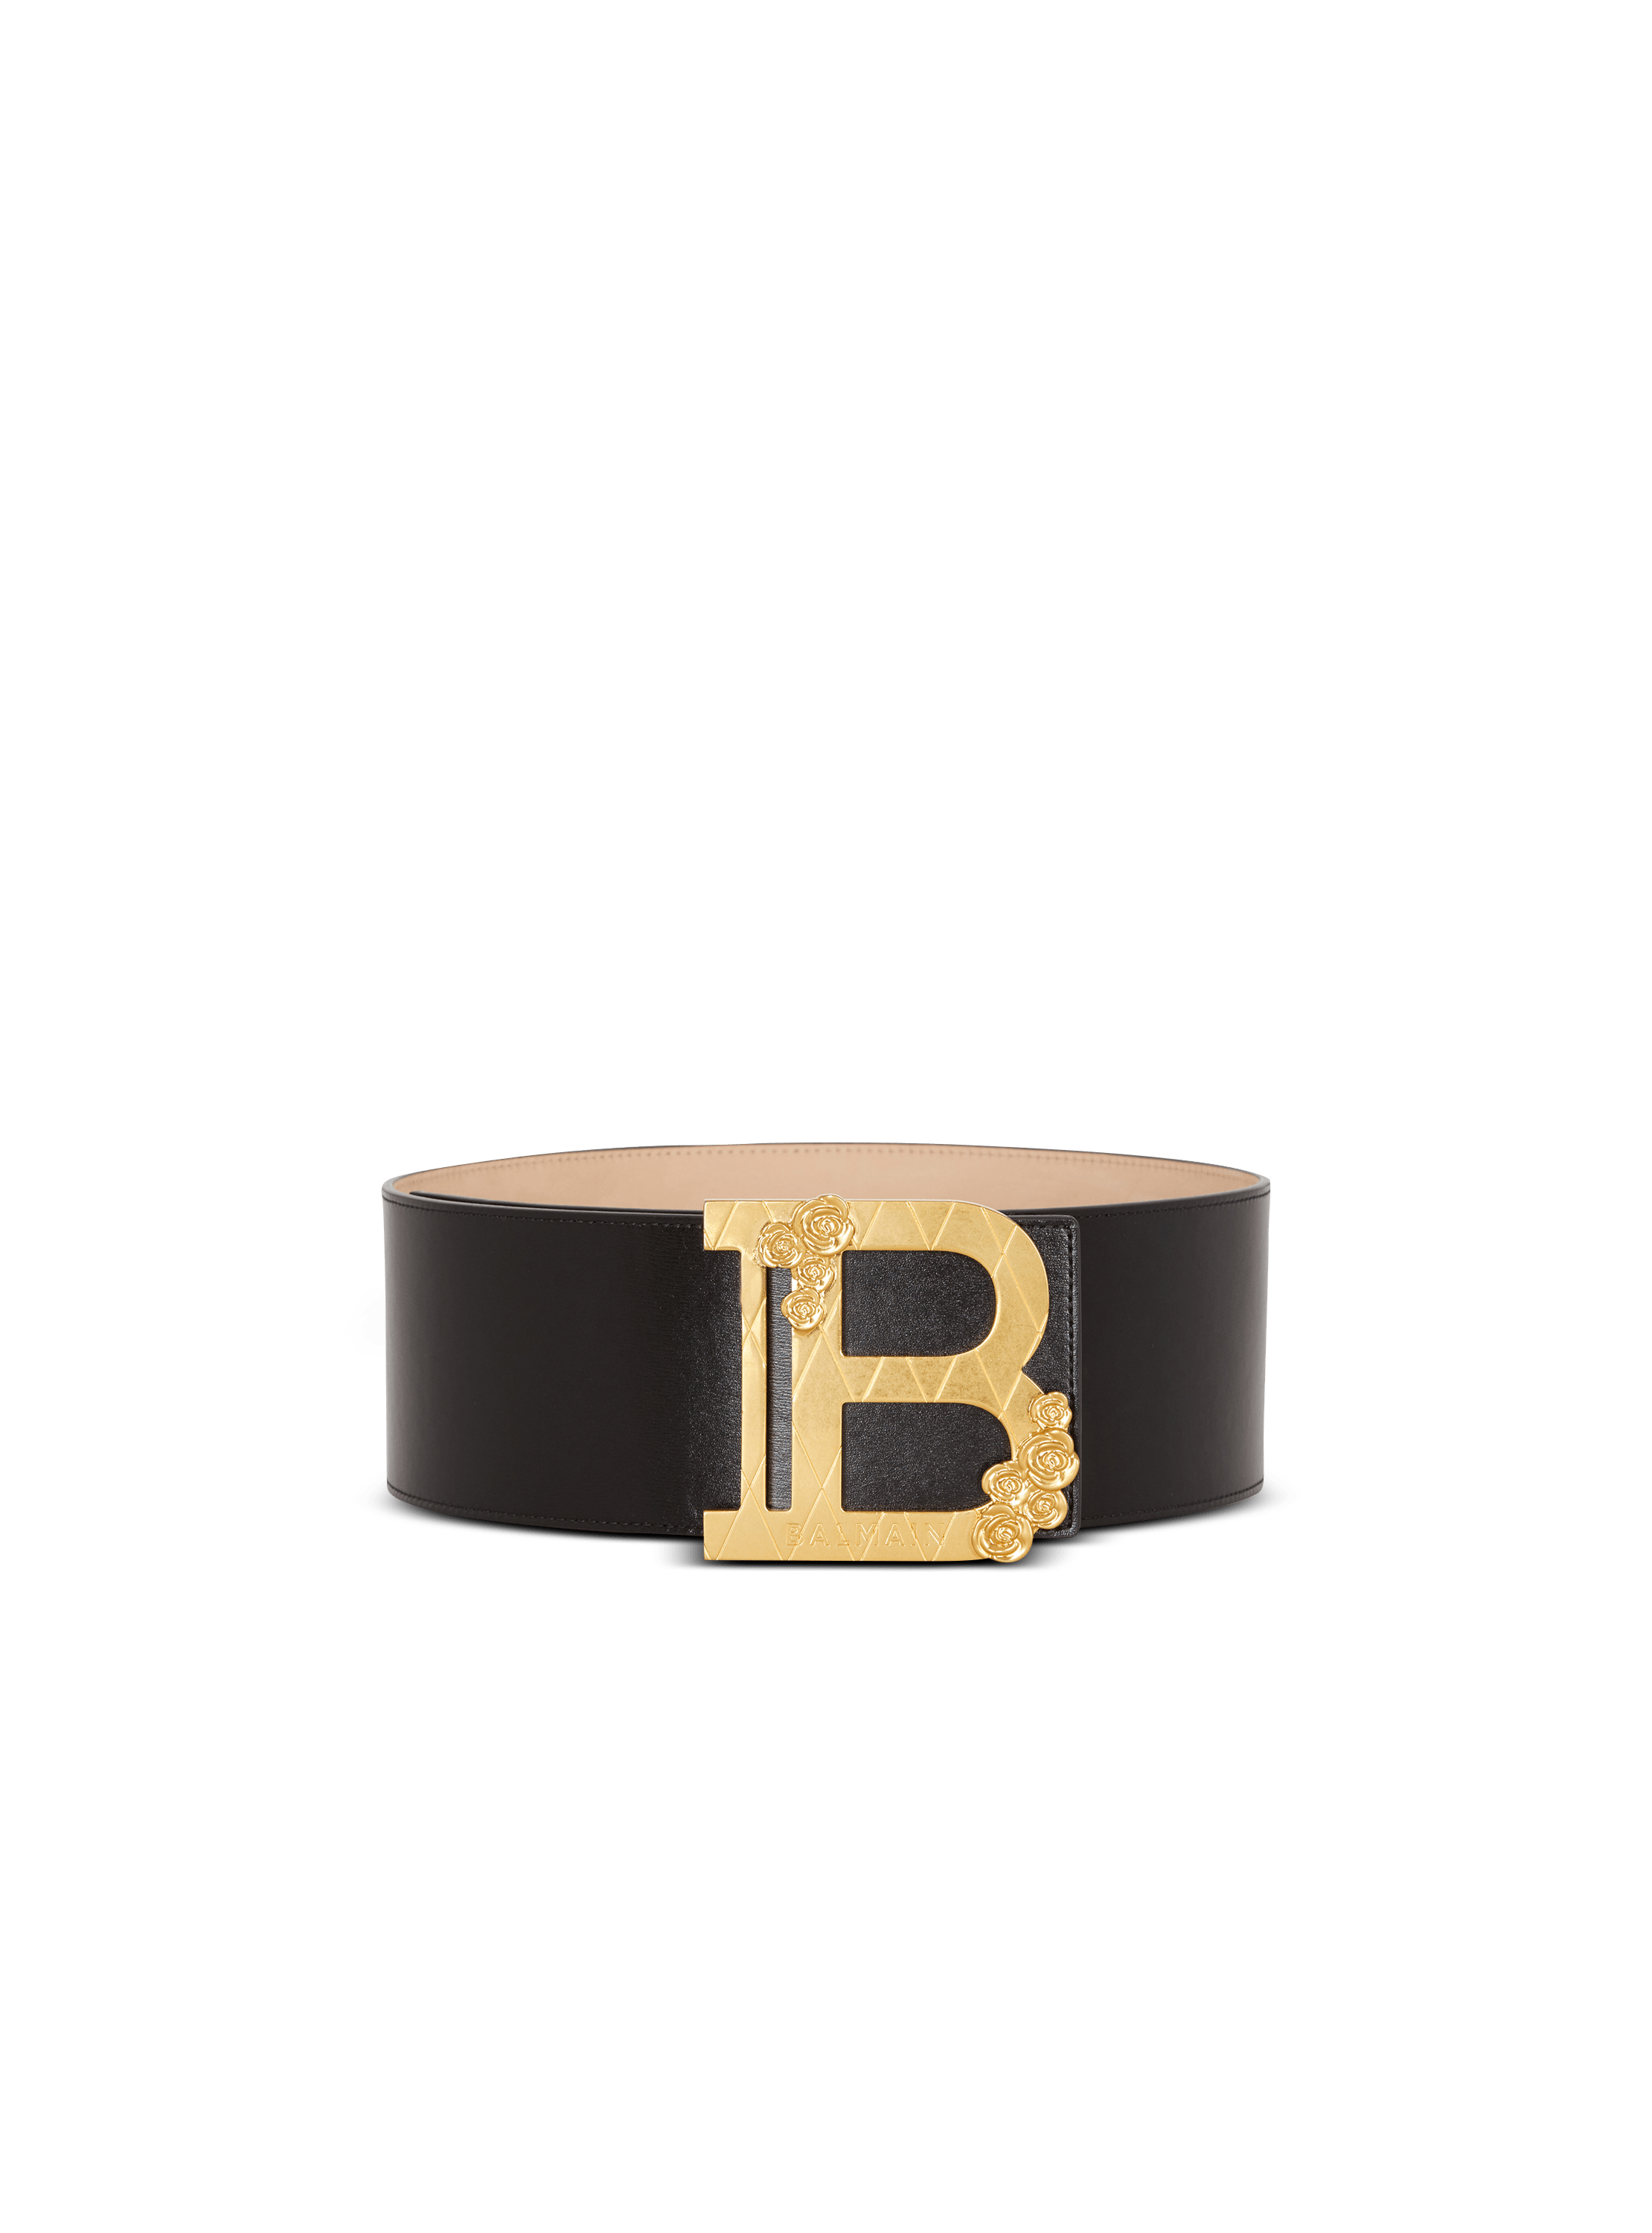 Wide calfskin B-Belt